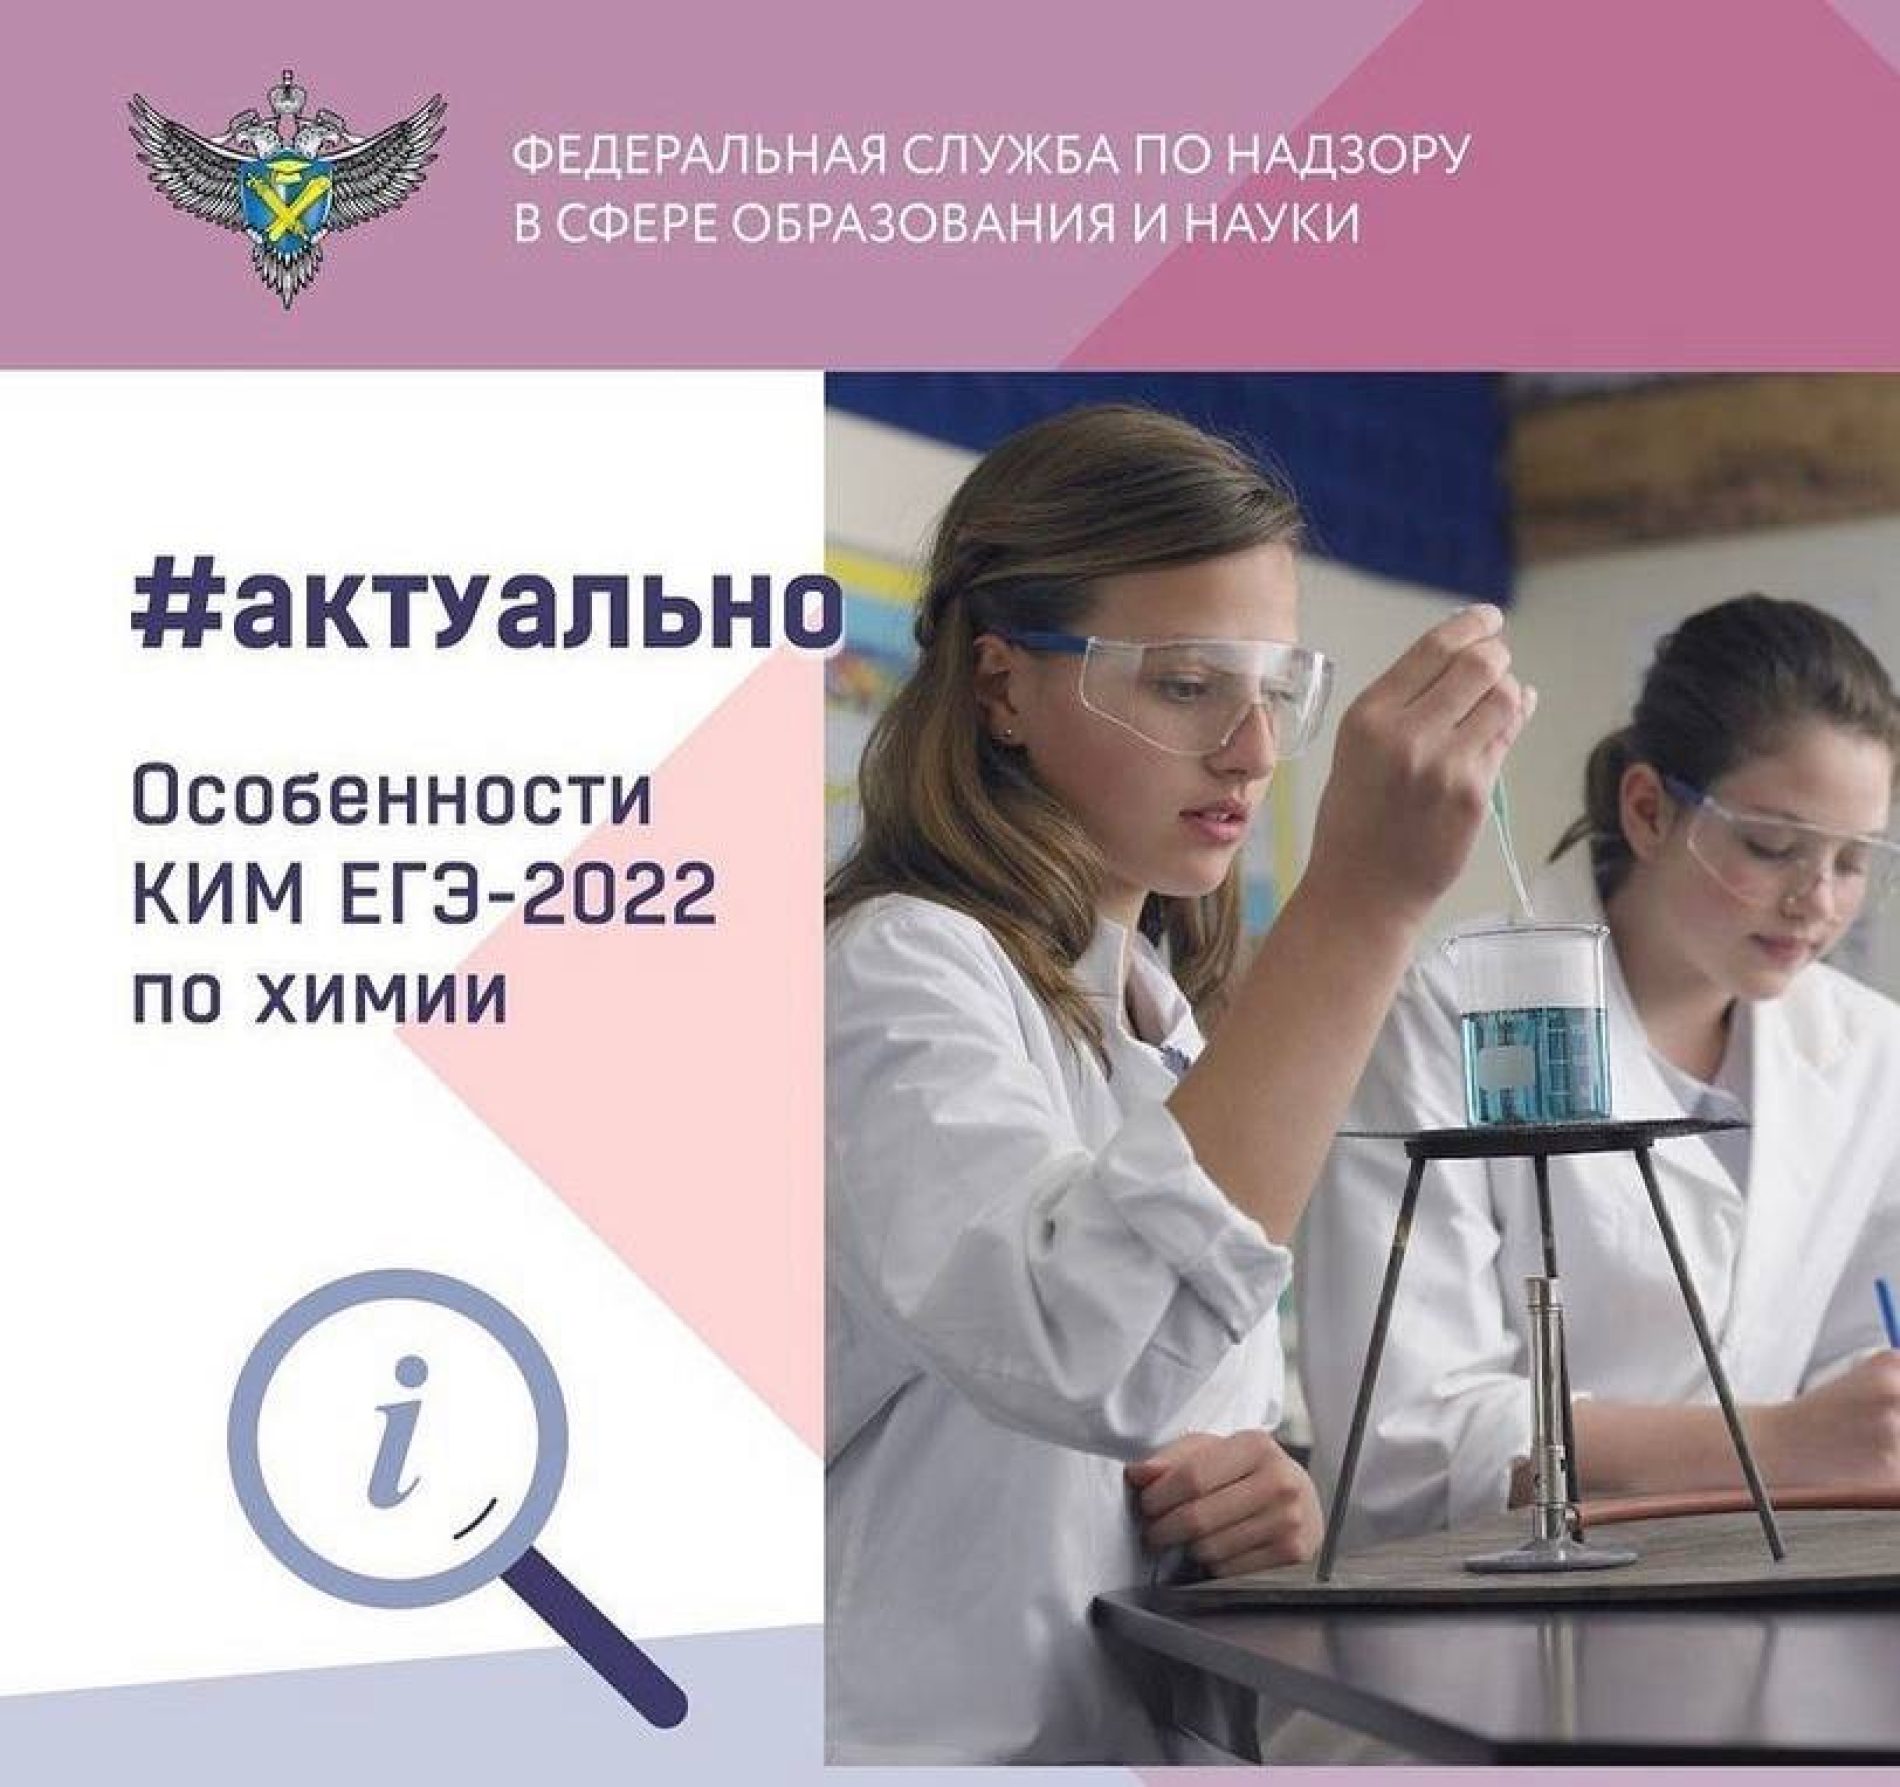 Особенности КИМ ЕГЭ-2022 по химии